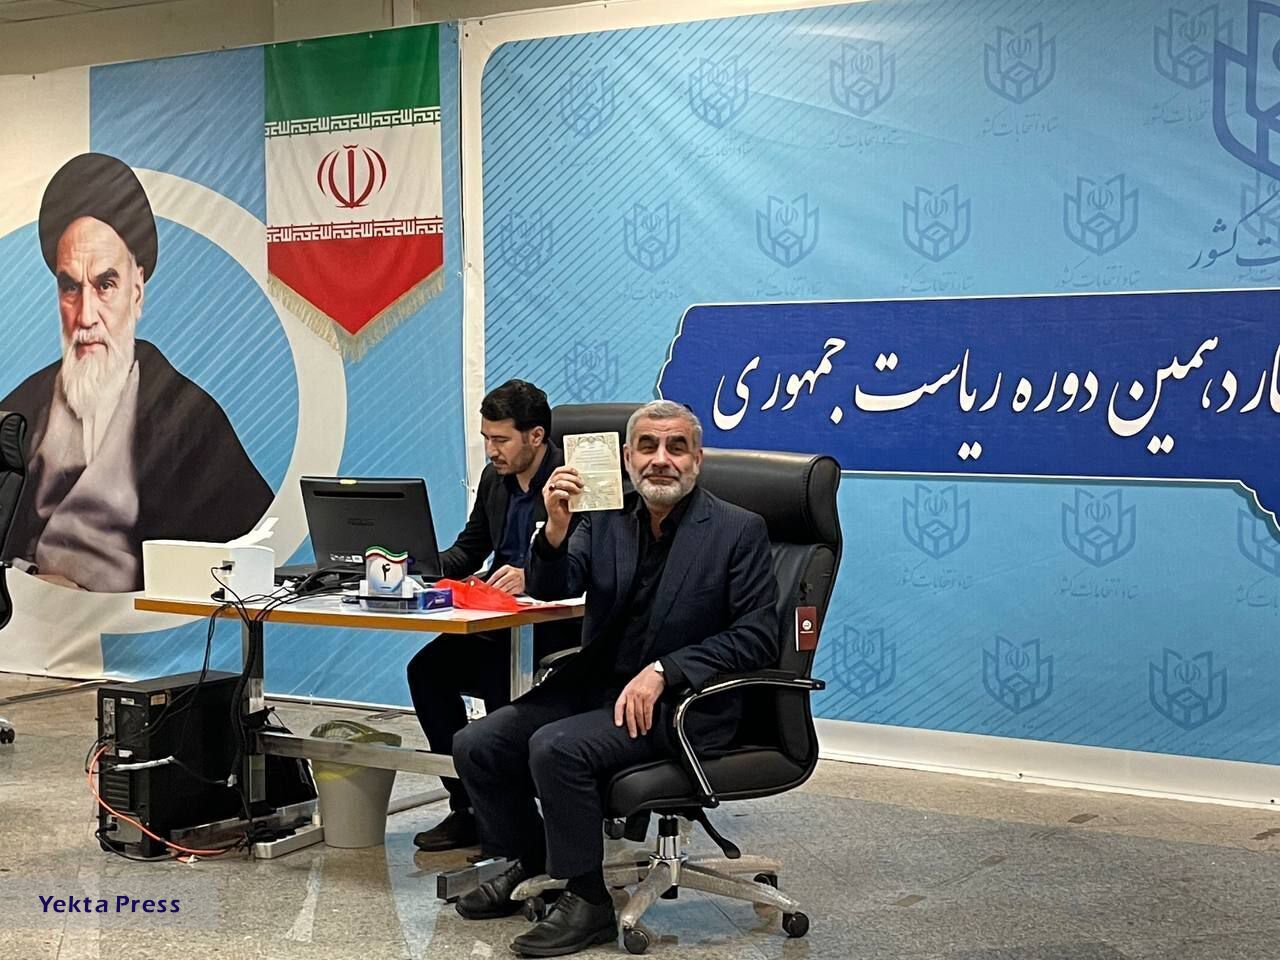 ثبت نام علی نیکزاد برای انتخابات ریاست جمهوری